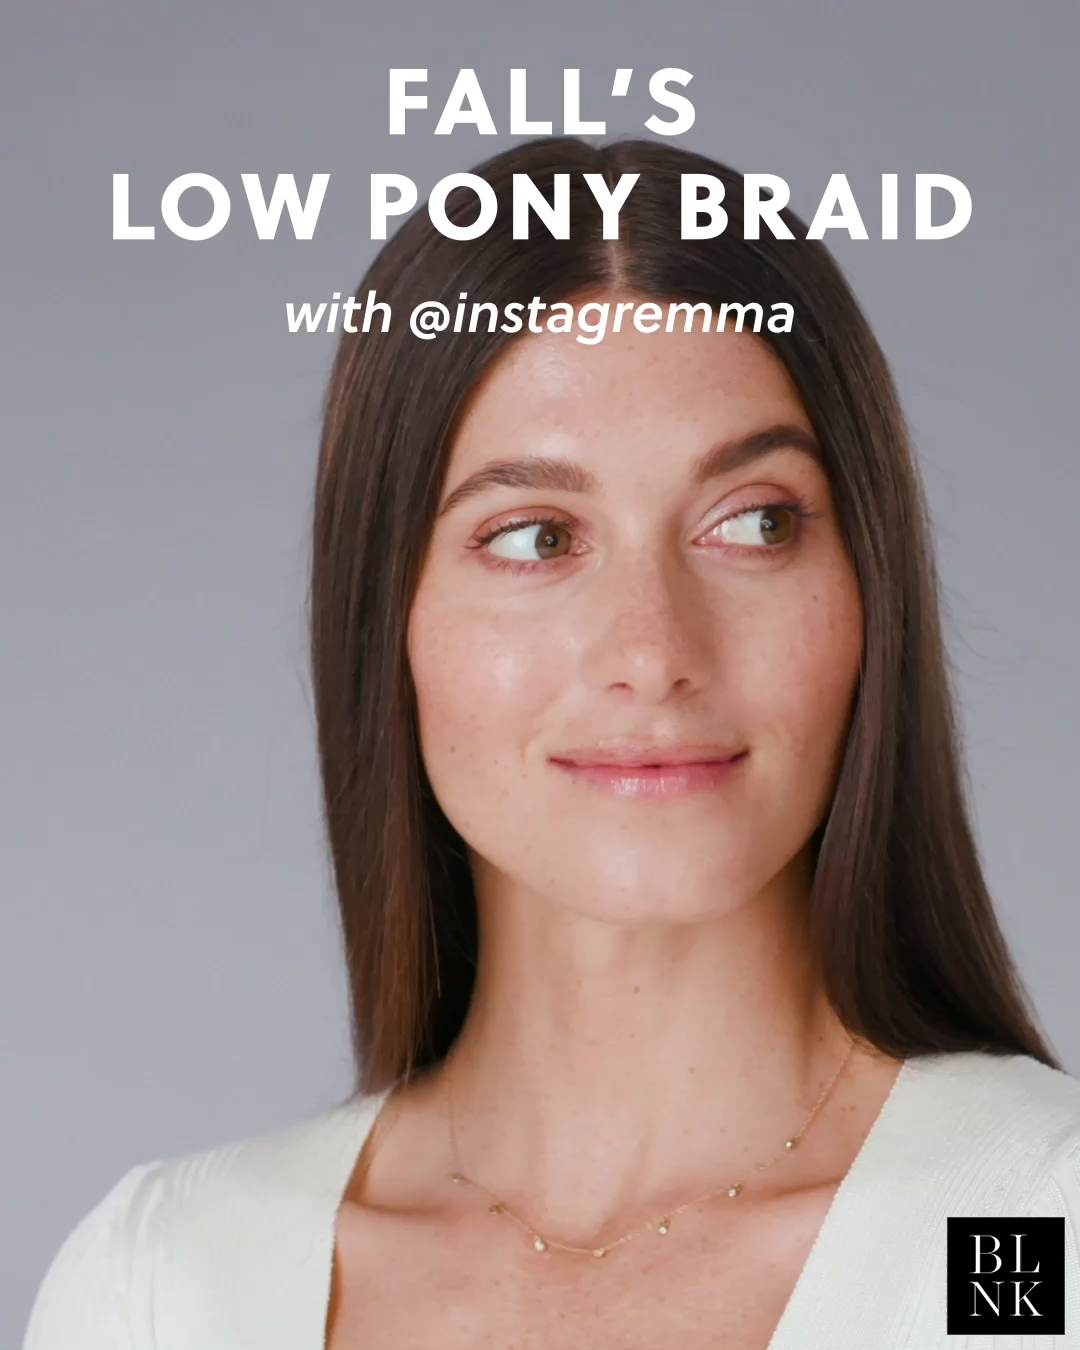 Fall's Low Pony Braid - Fall's Low Pony Braid -   17 blink beauty Videos ideas